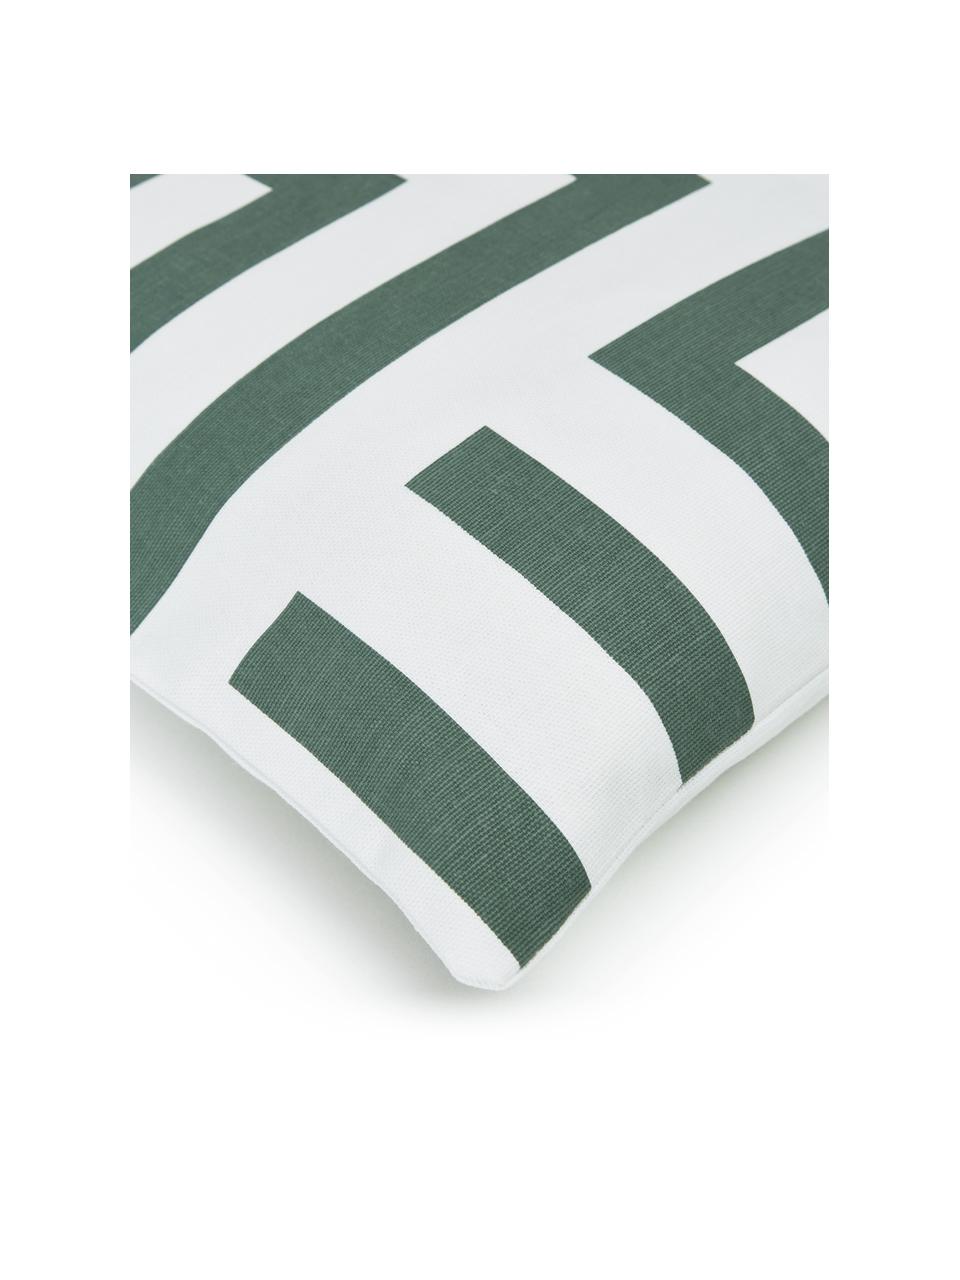 Federa arredo in cotone verde salvia/bianco con motivo grafico Bram, 100% cotone, Bianco, verde salvia, Larg. 45 x Lung. 45 cm